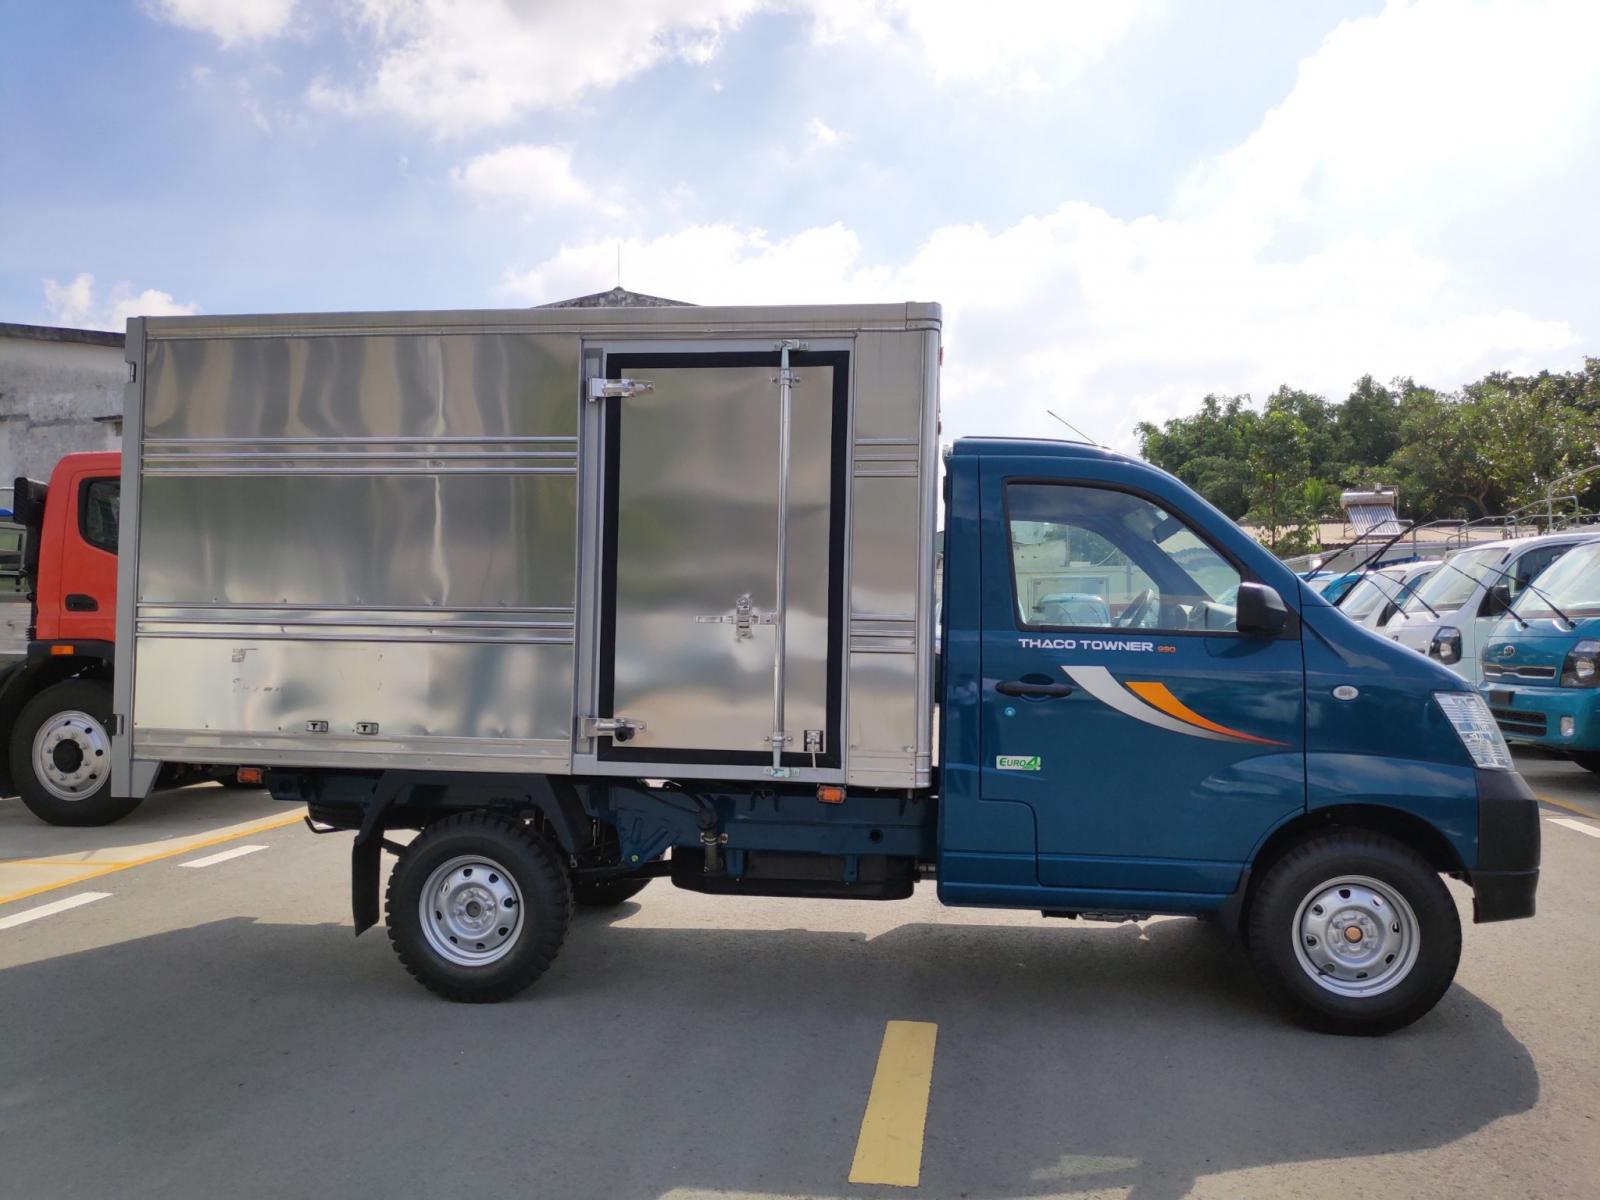 Thaco TOWNER 990 2020 - Bán xe tải 900kg Towner990, xe mới 100%. Hỗ trợ trả góp - Liên hệ 0938808967 để biết thêm thông tin